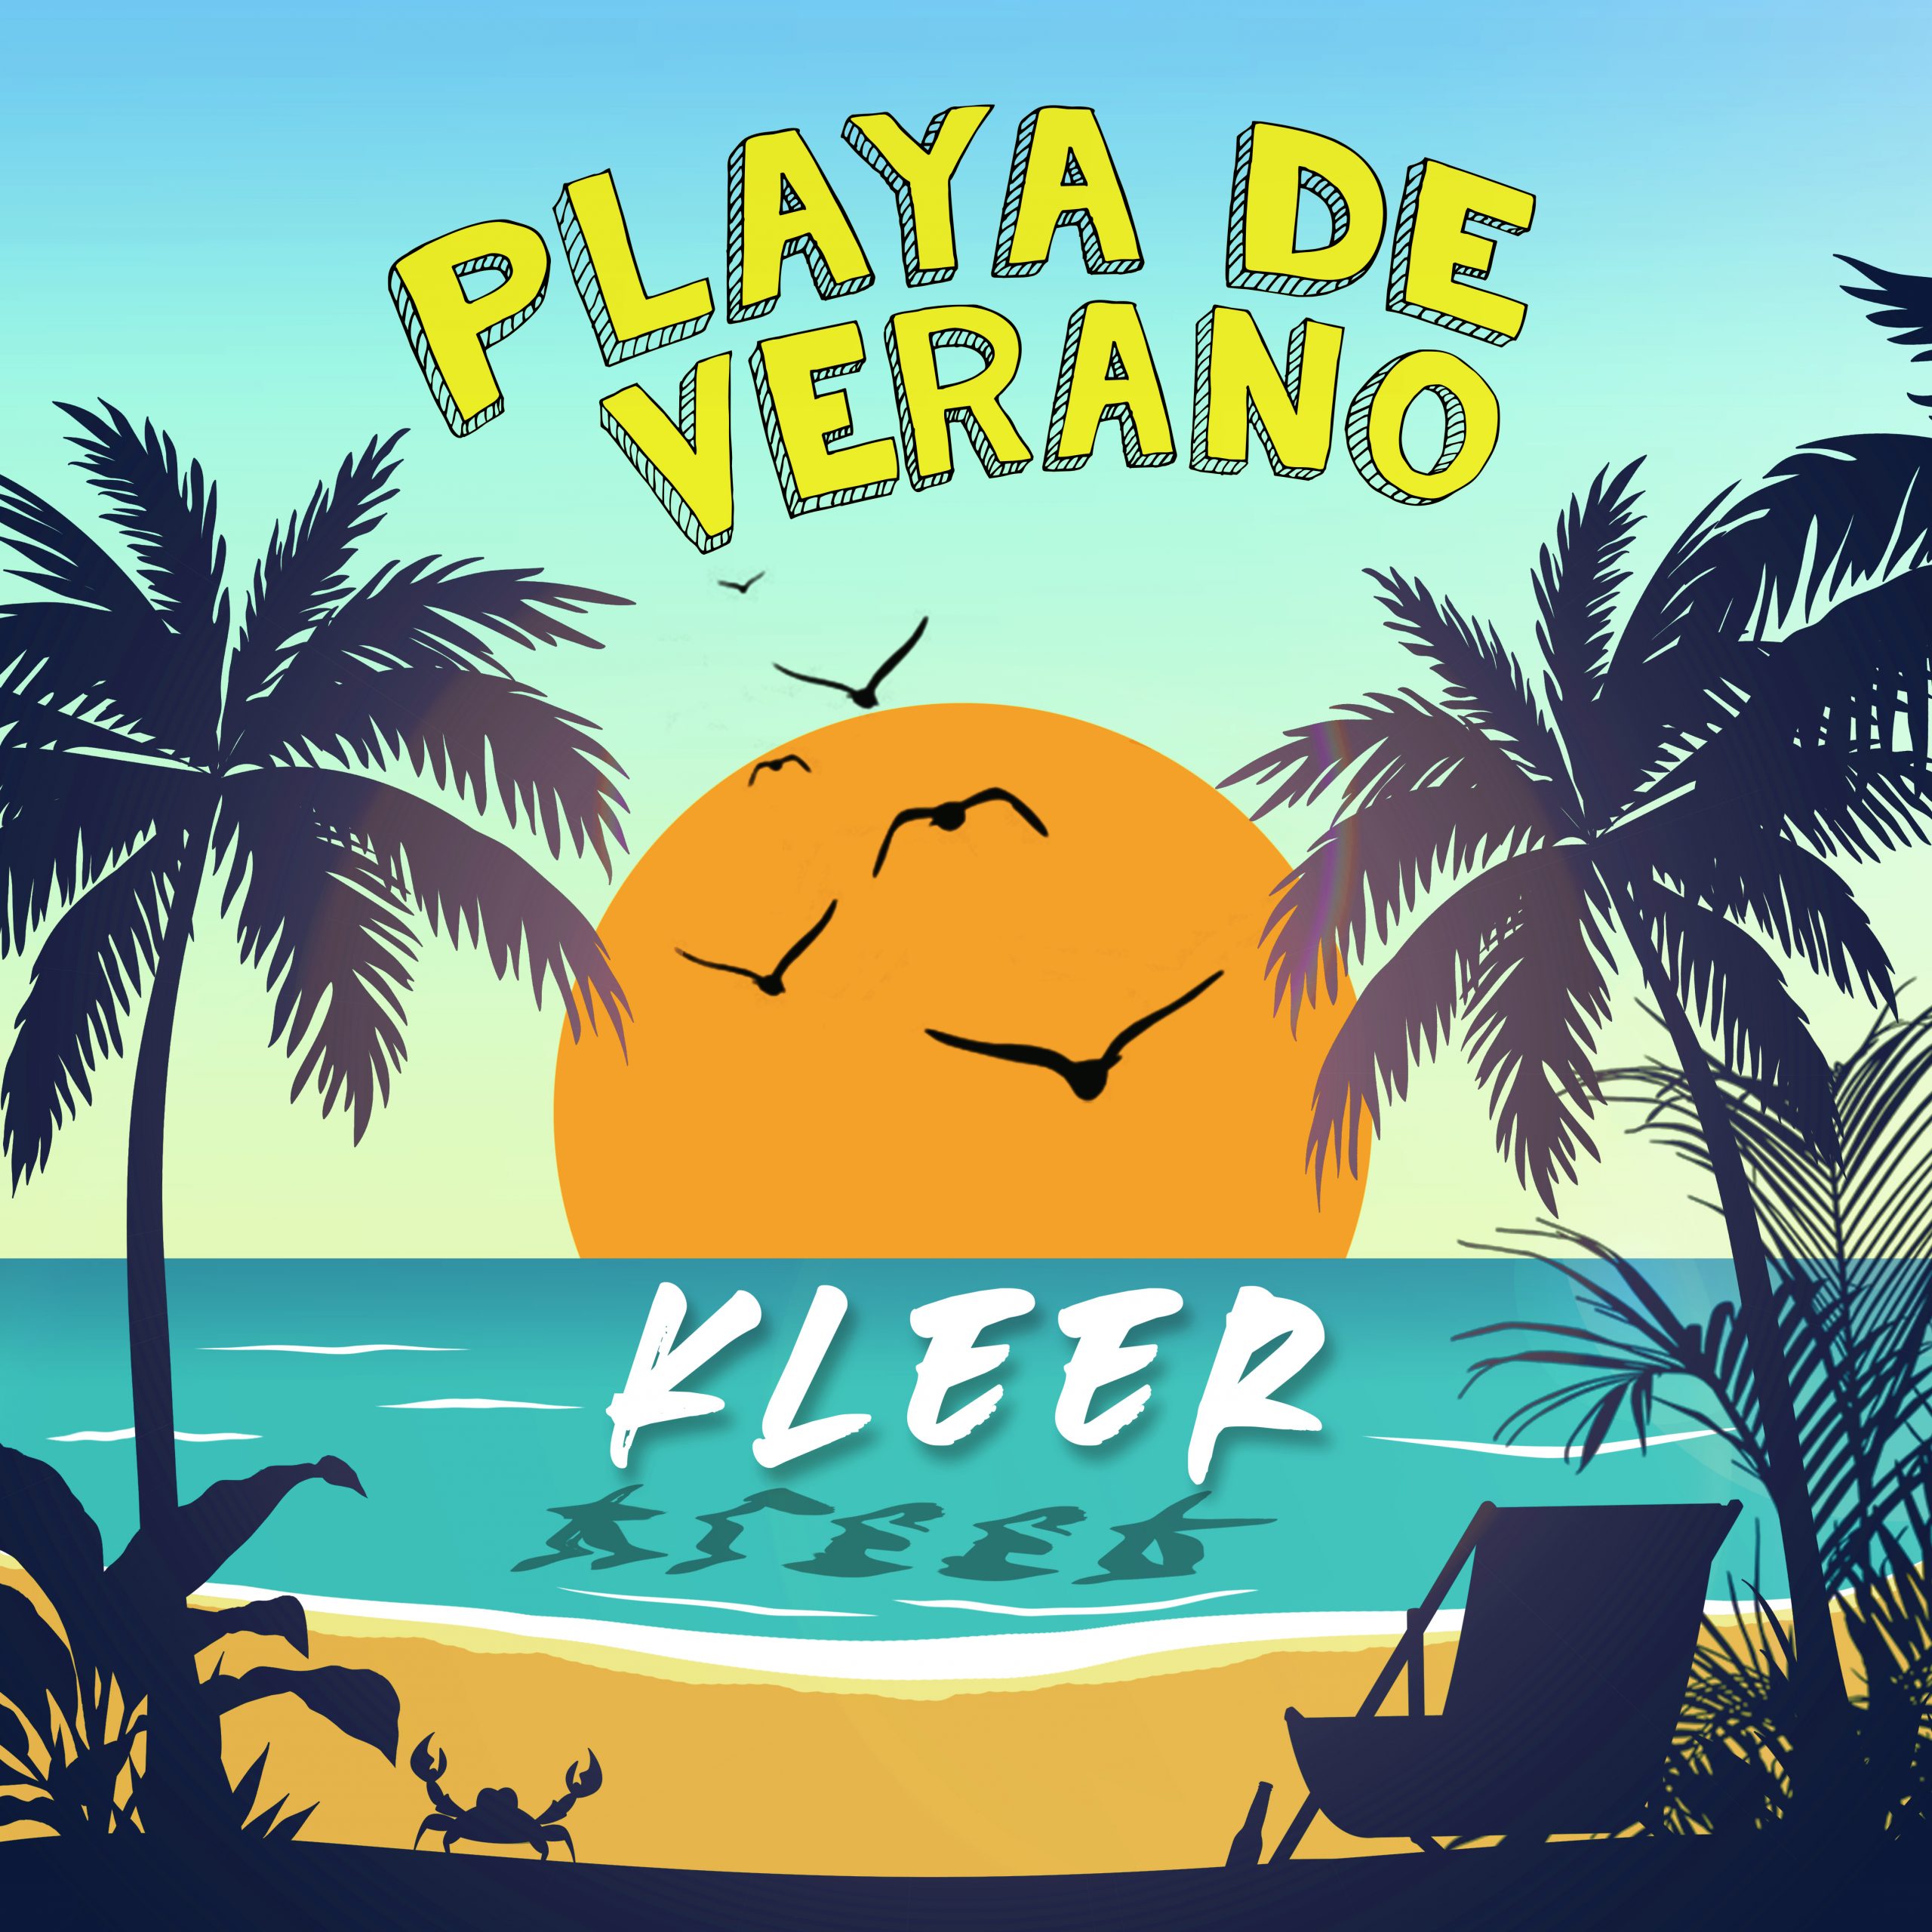 Kleer, el nuevo sonido del Pop Urbano lanza “Playa de Verano”